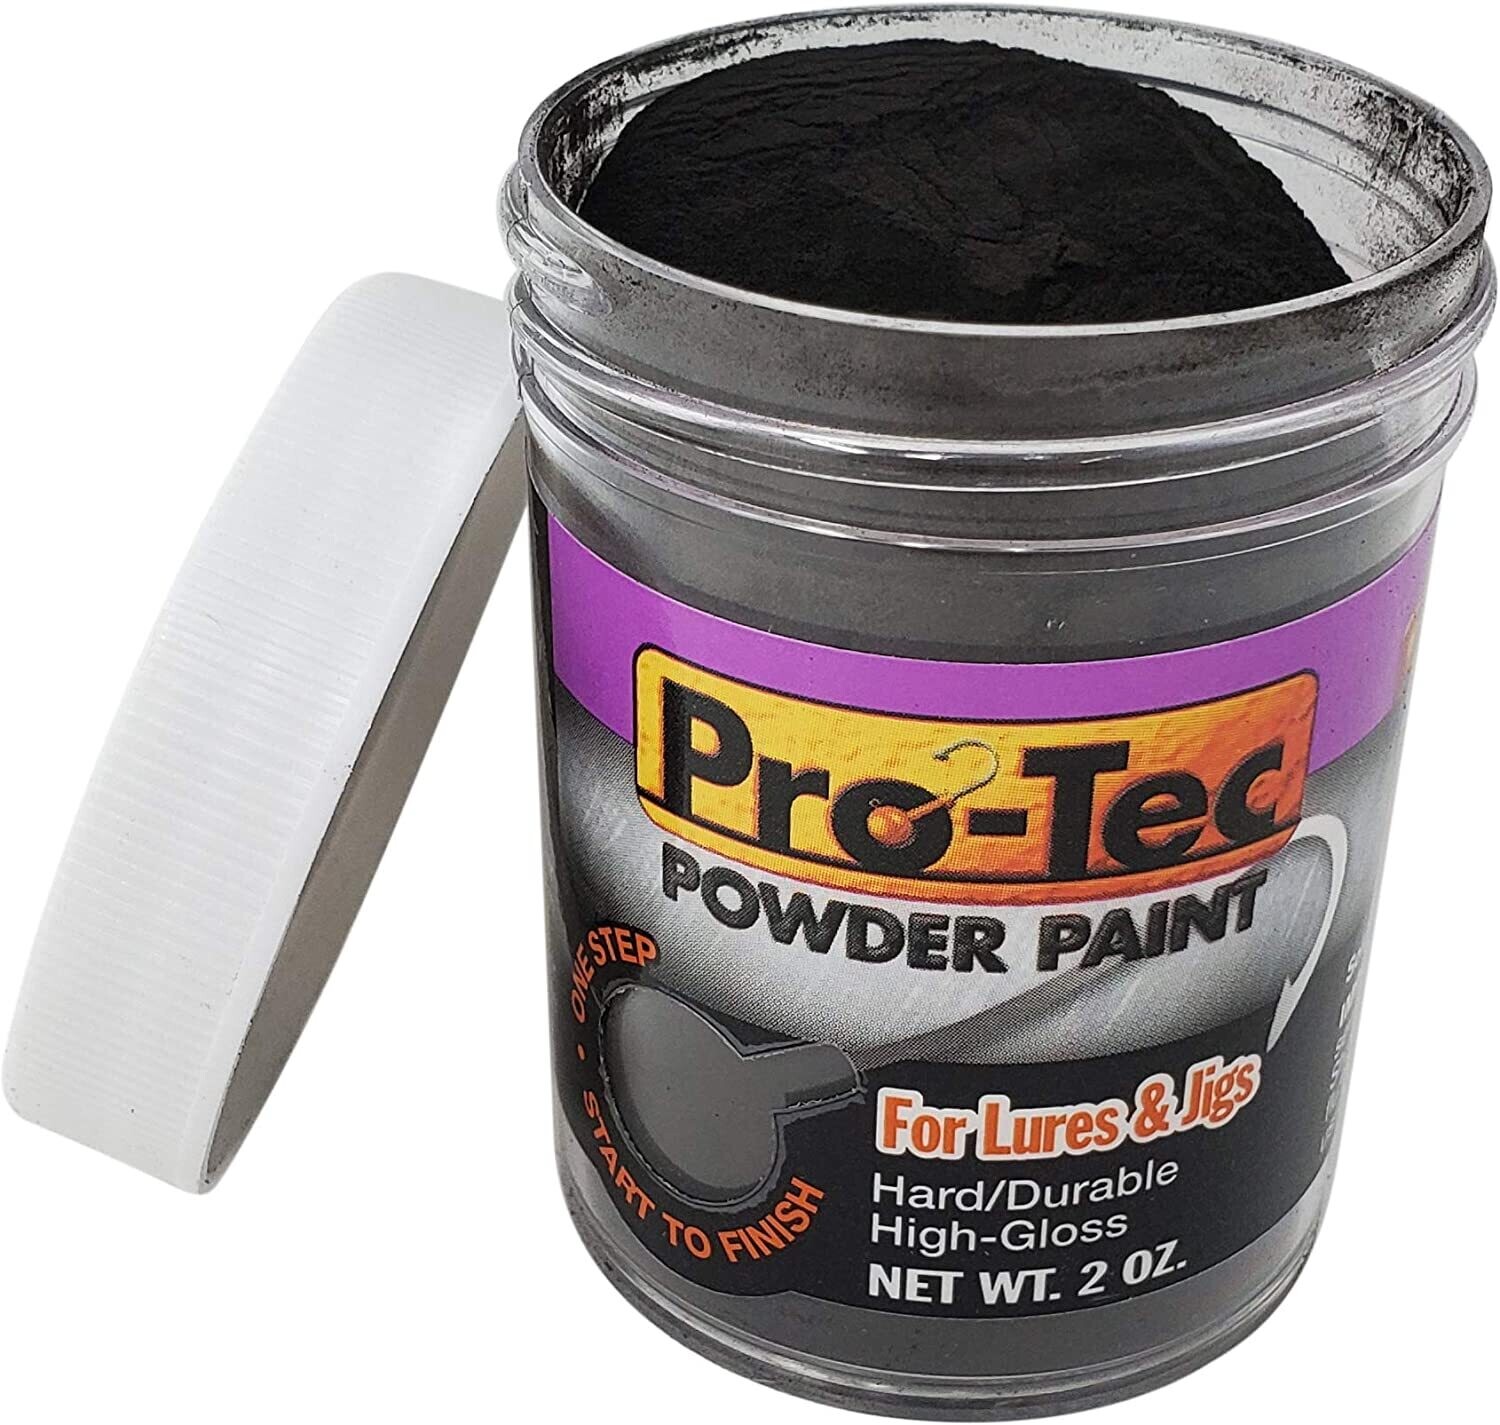 Do-it Pro Tec Powder paint matte black